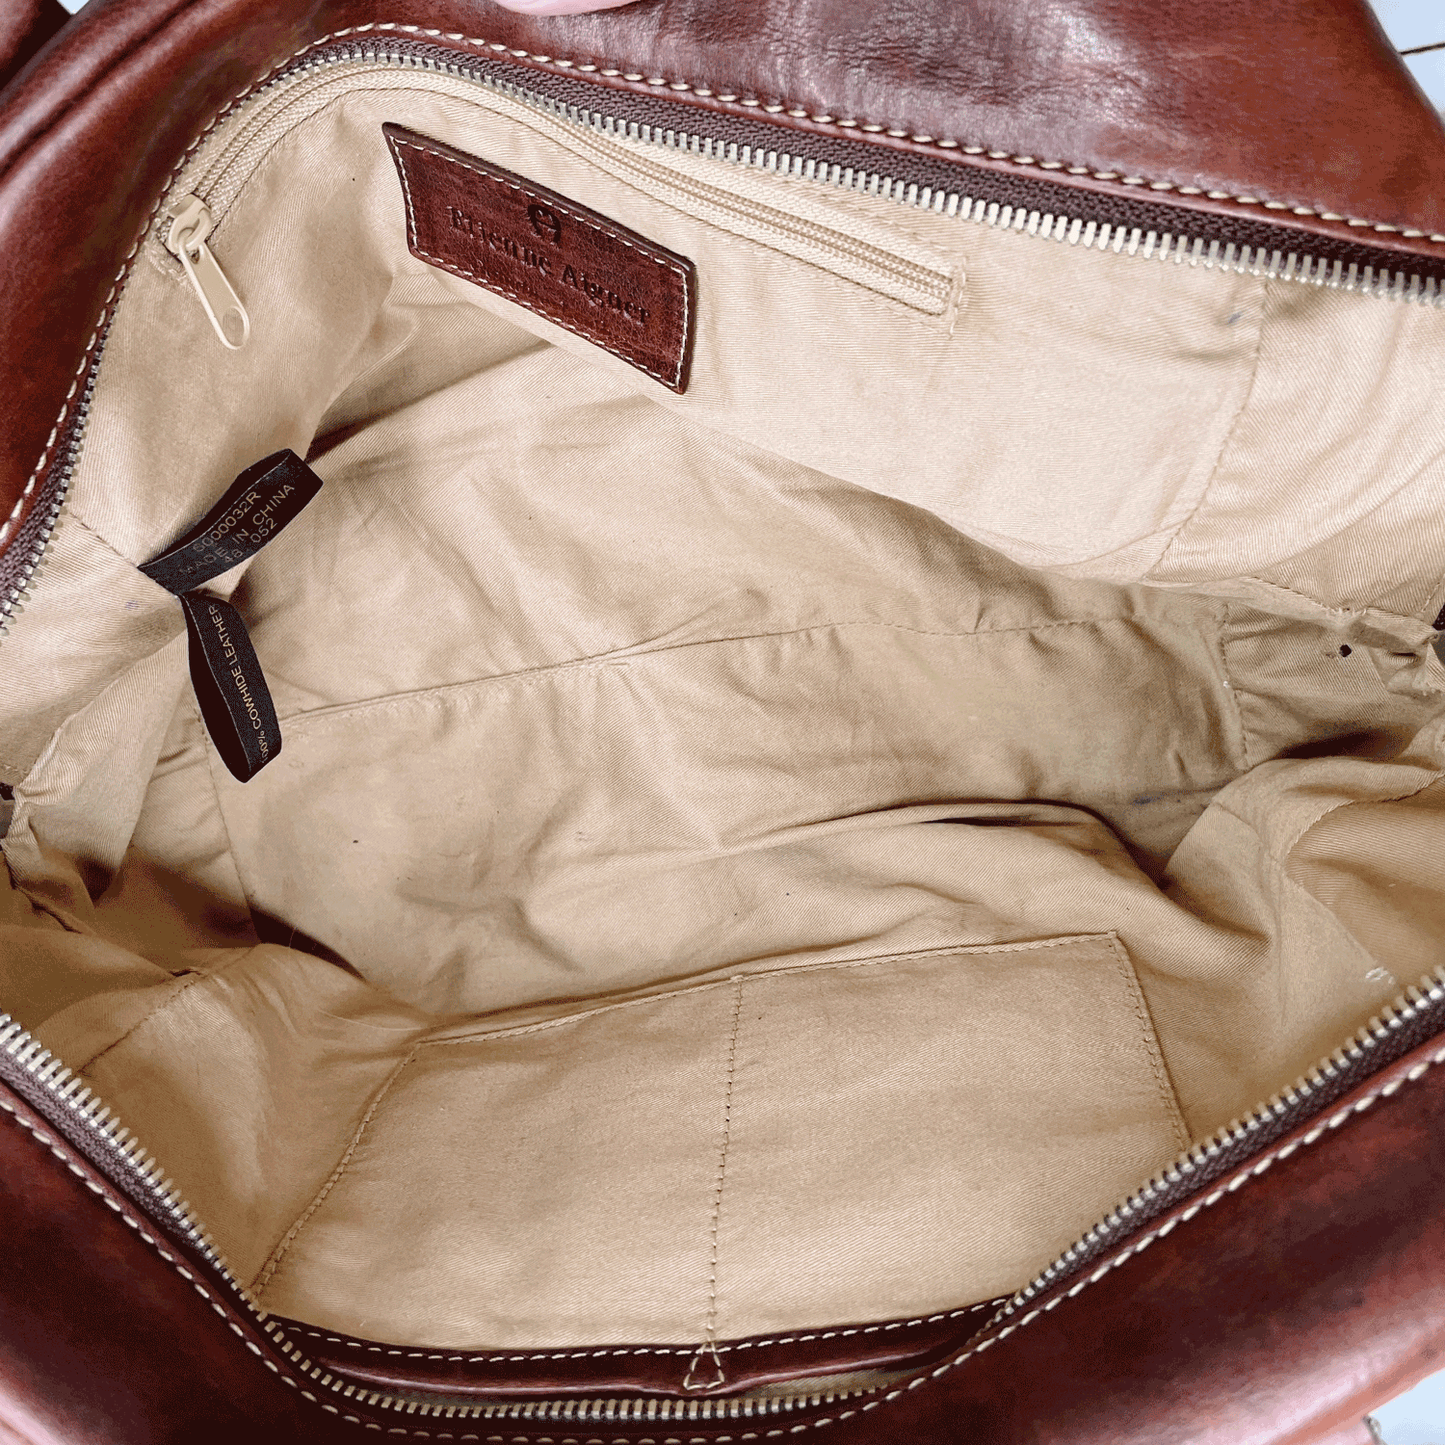 vintage etienne aigner cognac leather handbag